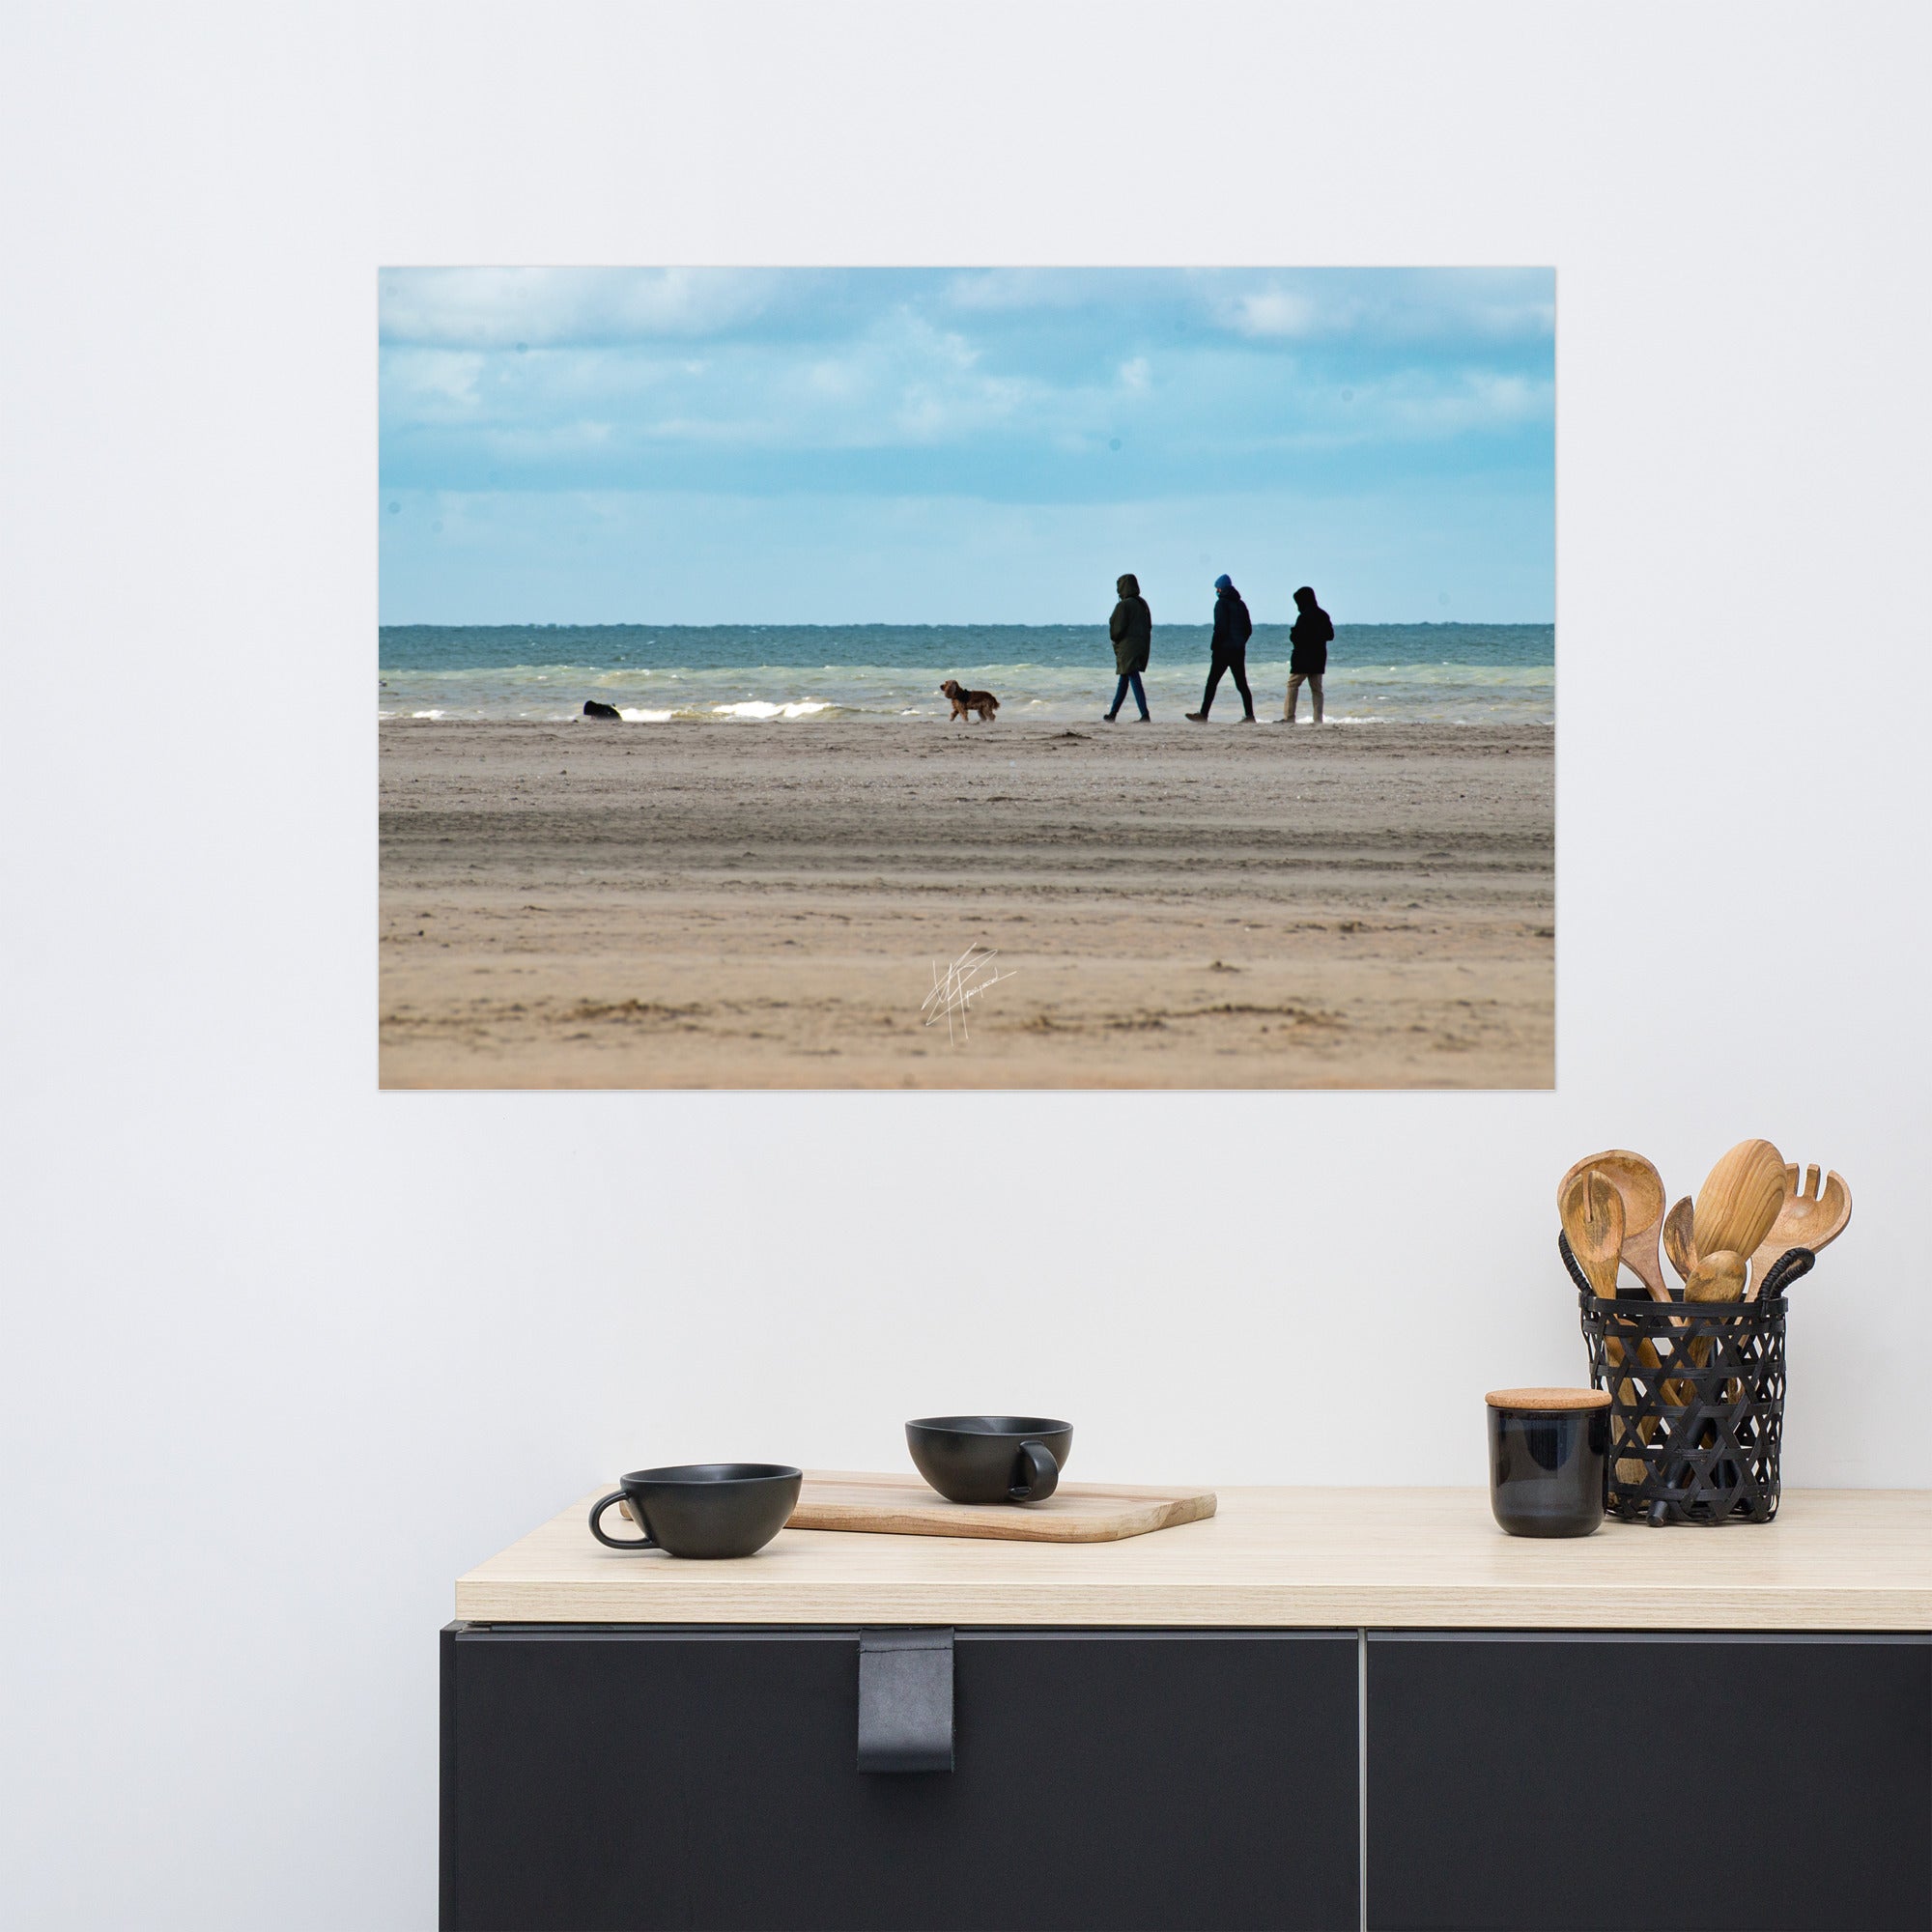 Photographie de la plage de Deauville avec des promeneurs et leur chien, capturant l'atmosphère tranquille et l'immensité de la mer normande.